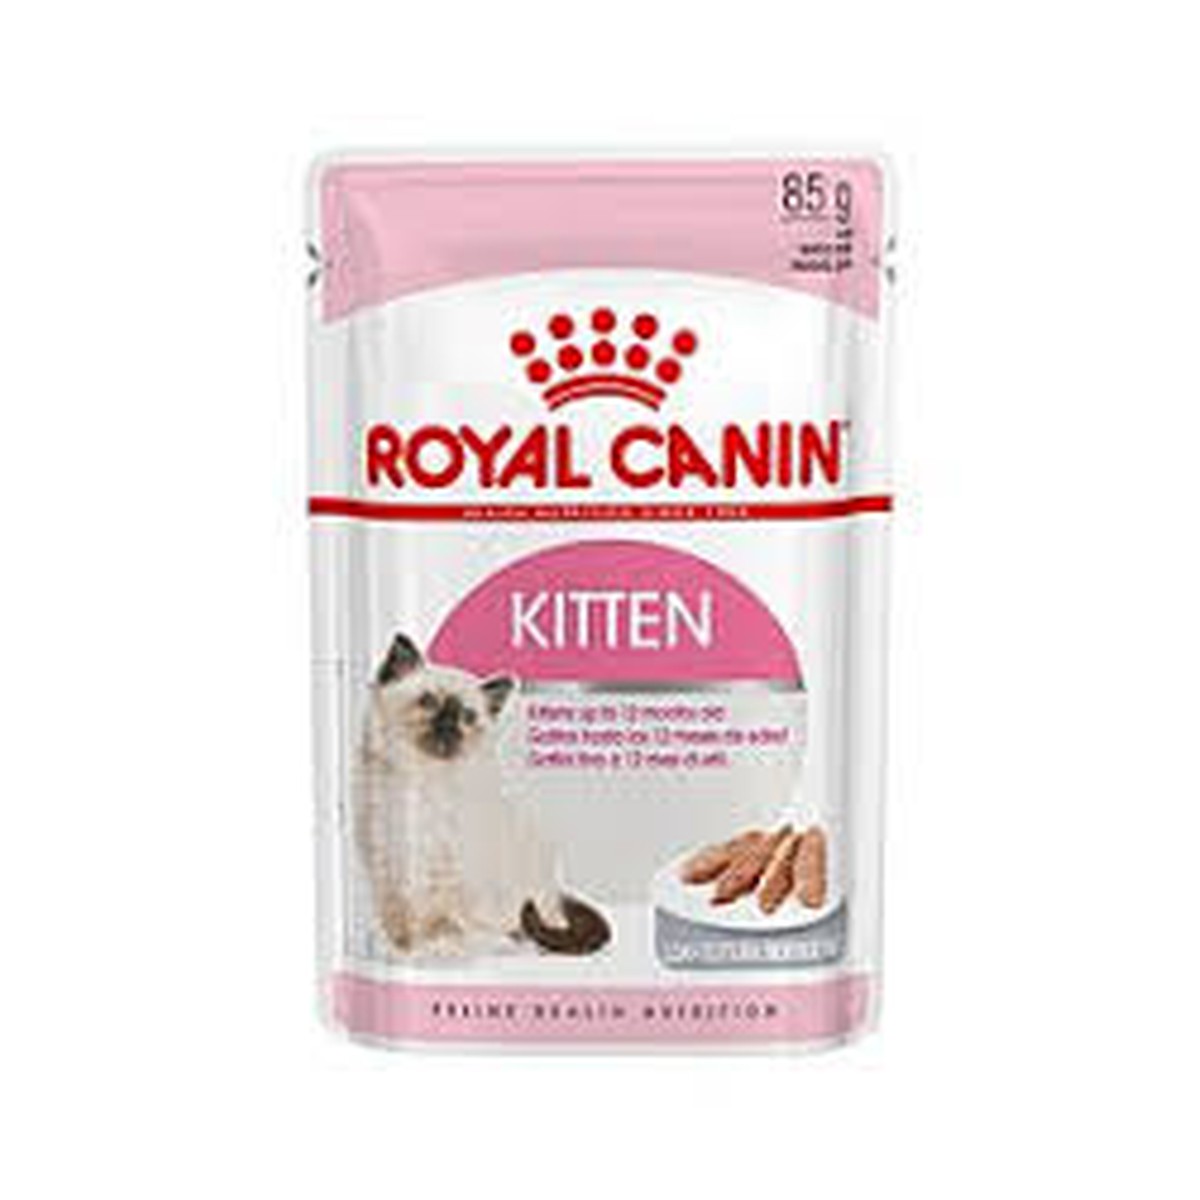 Royal Canin  Kitten Instinctive (Mousse)  85 g  85 g